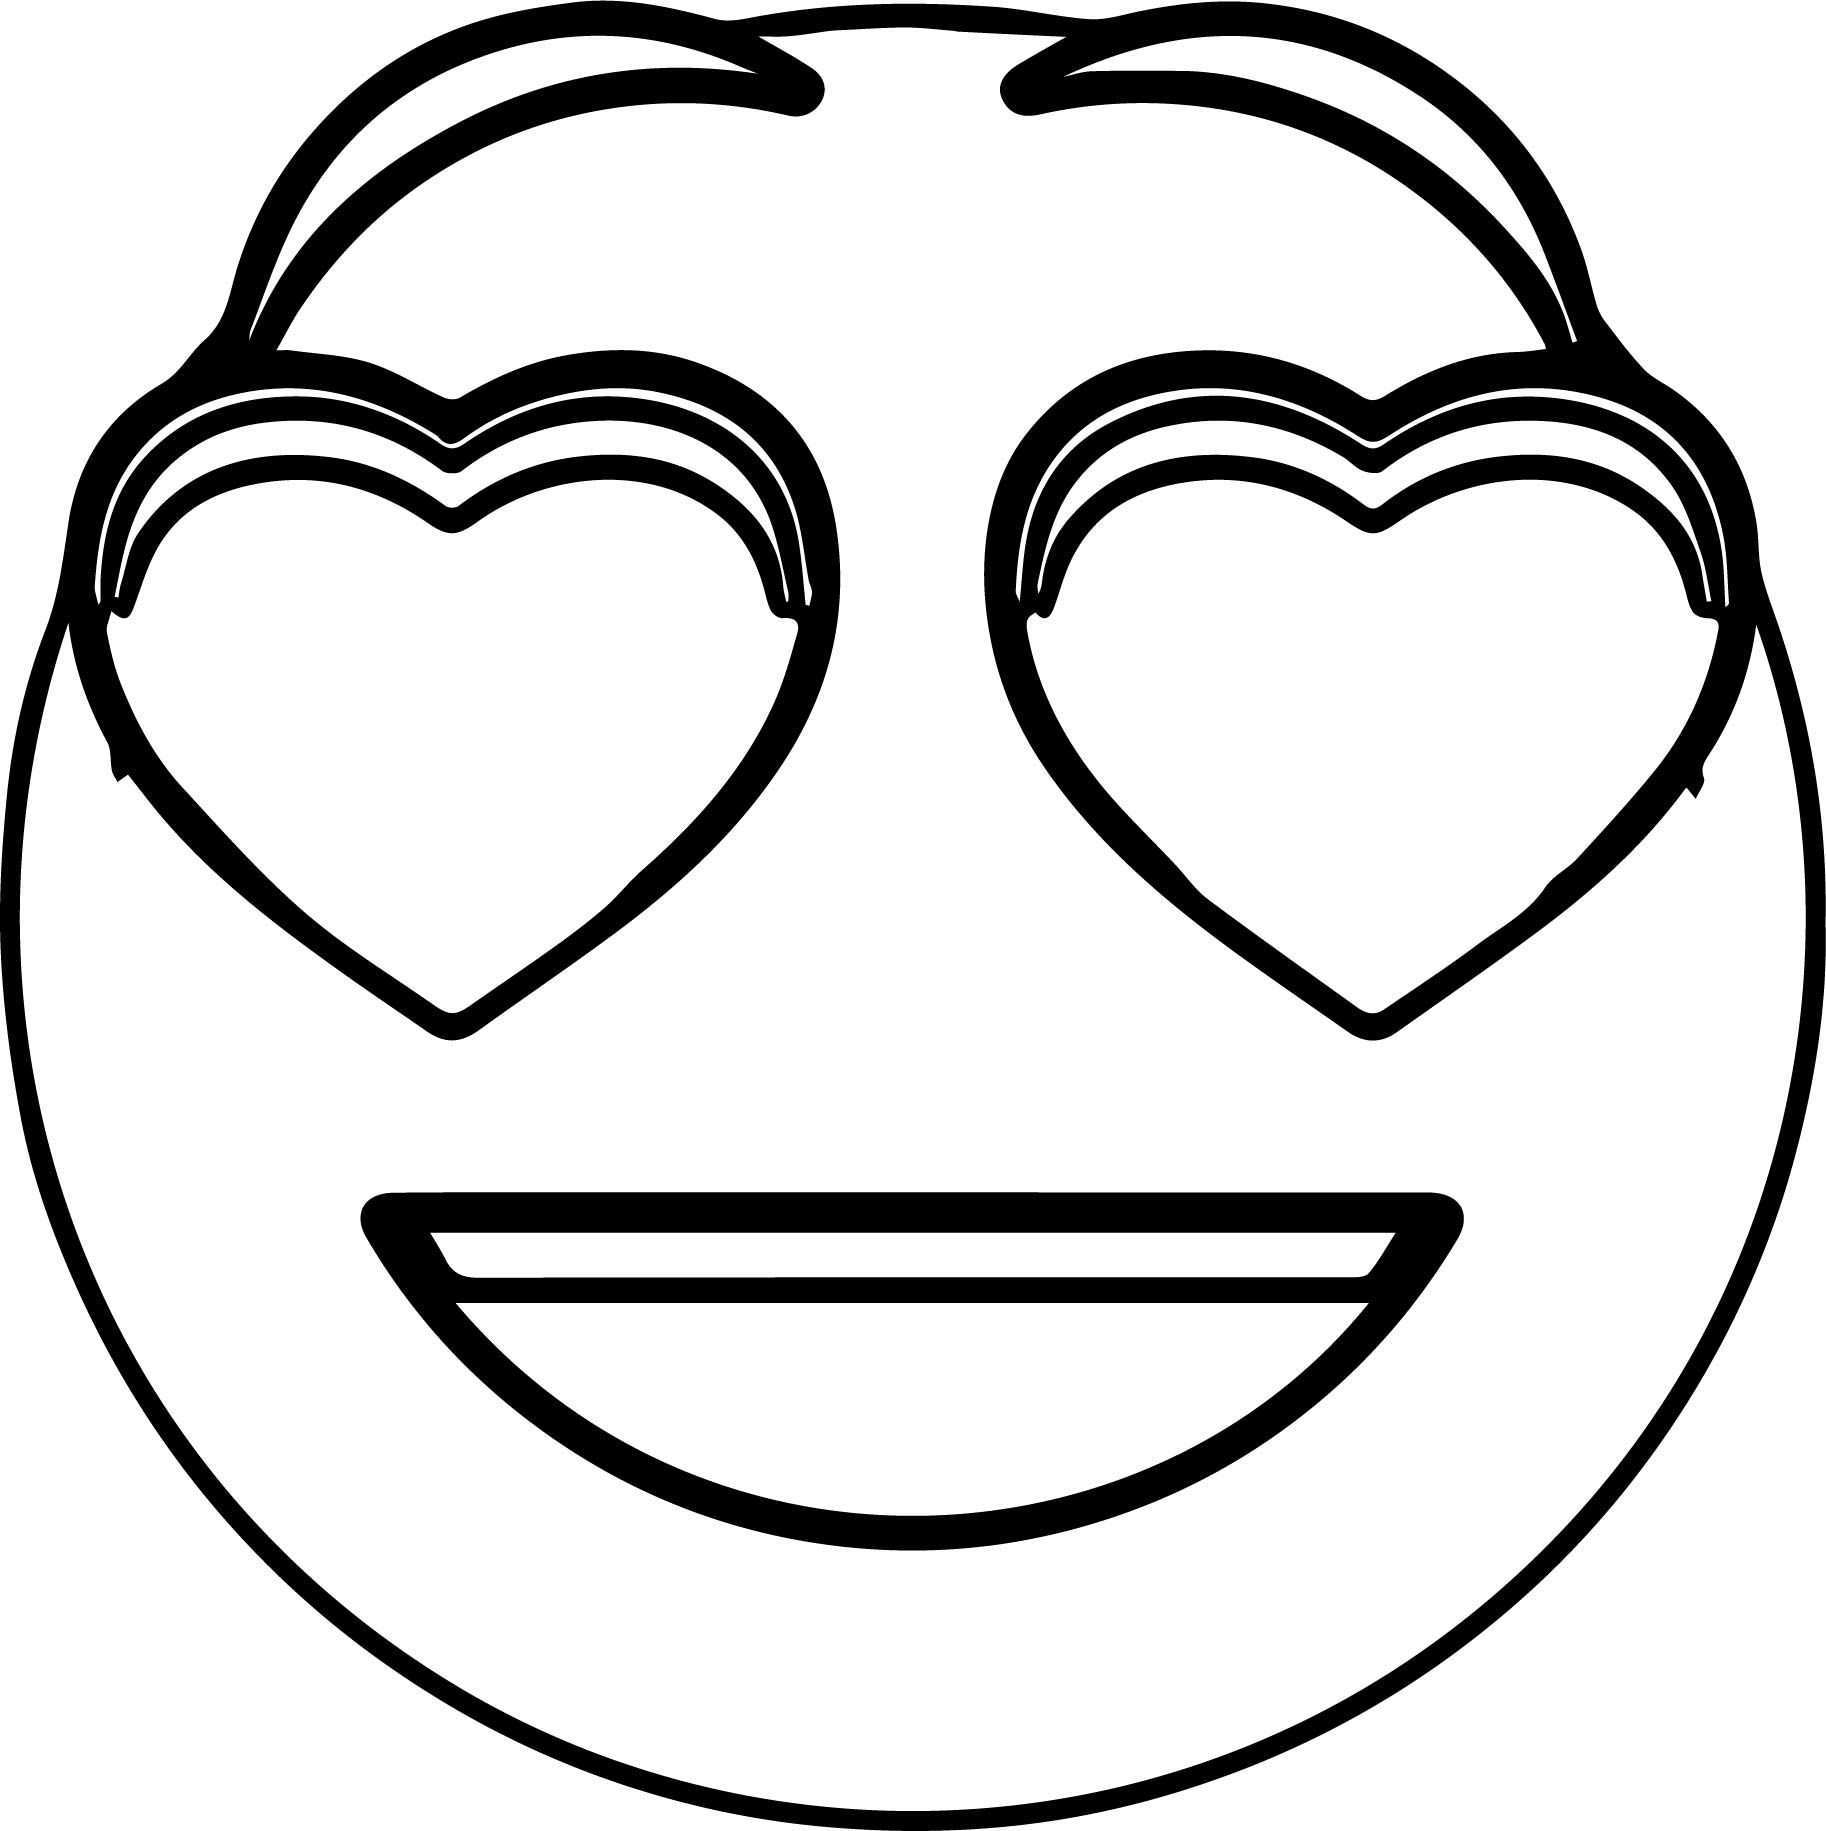 Cool Emology Love Smiley Emoticon Coloring Page Love Smiley Coloring Pages Heart Colo